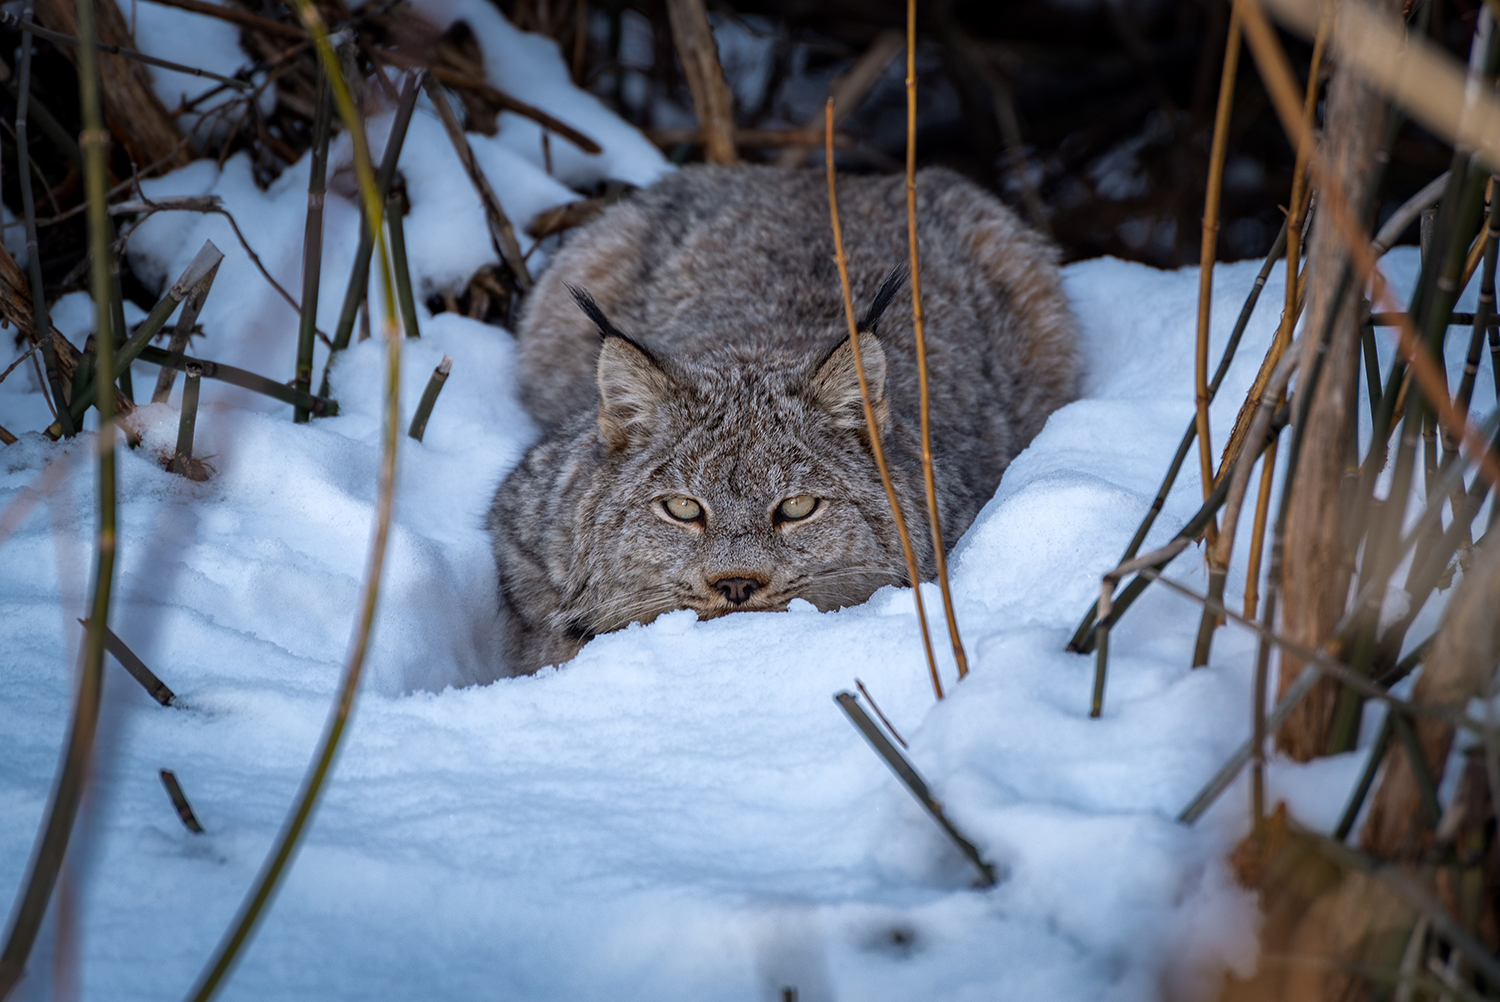 Kamloops Fauna wildcat in the snow